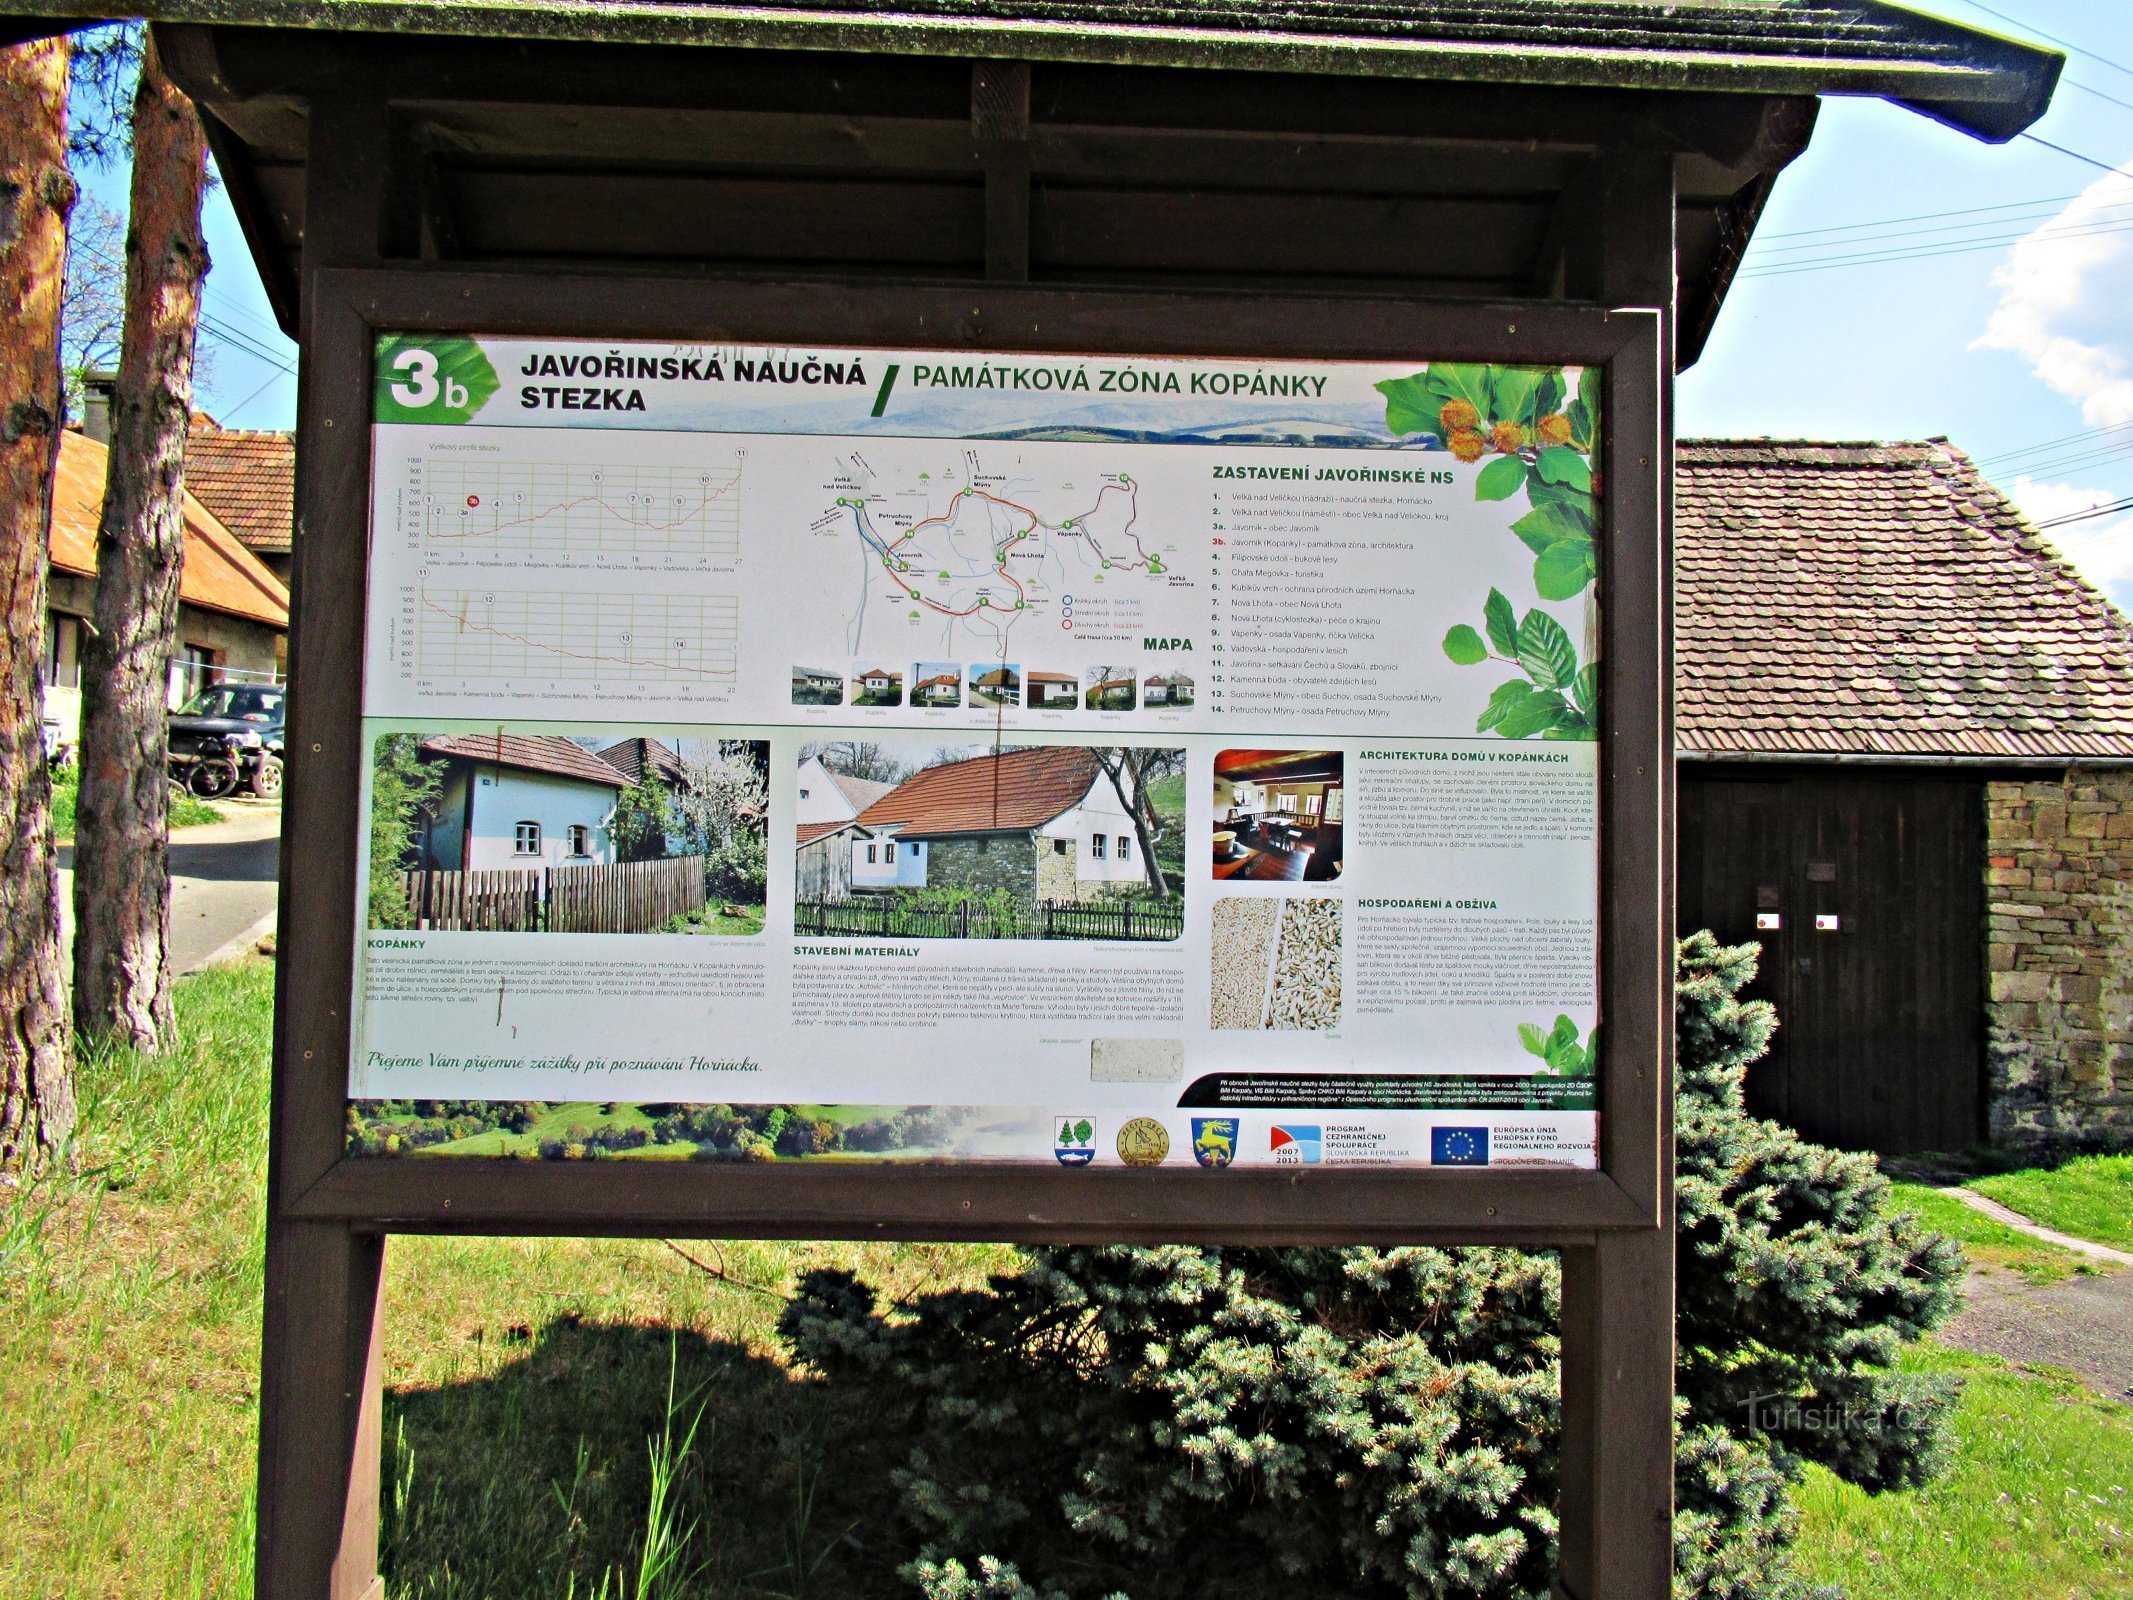 A aldeia de Javorník, casas pitorescas na área - Kopanky na aldeia de Javorník em Slovácko